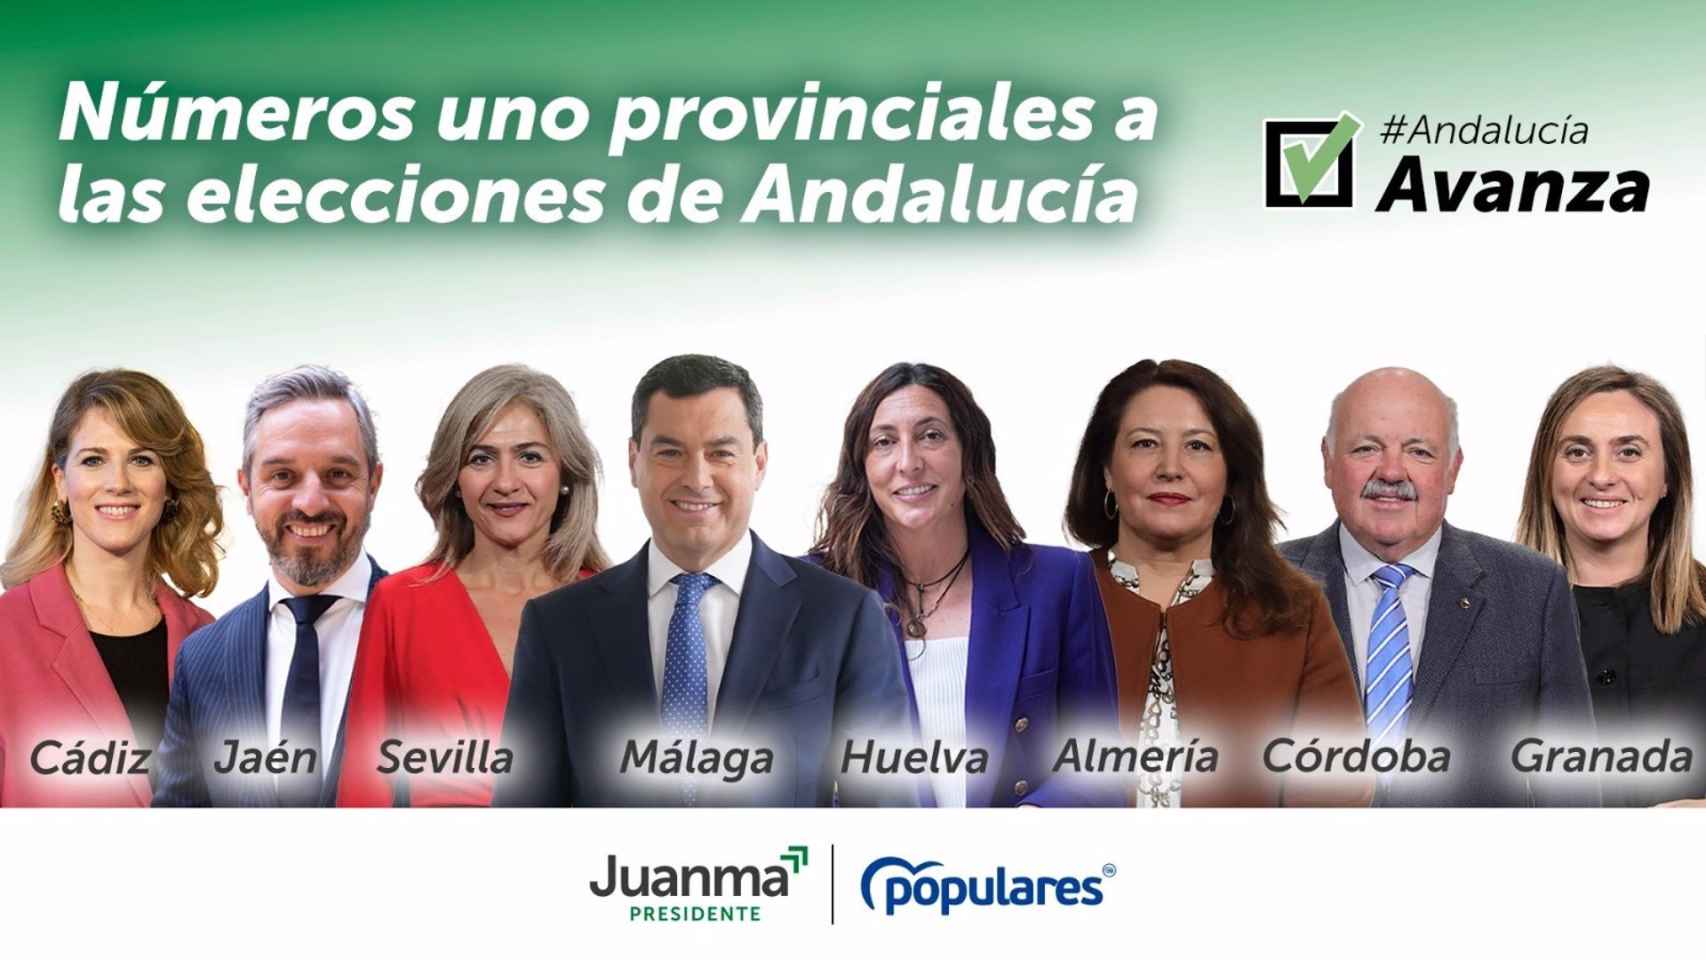 Cabezas del lista de PP para las elecciones andaluzas.